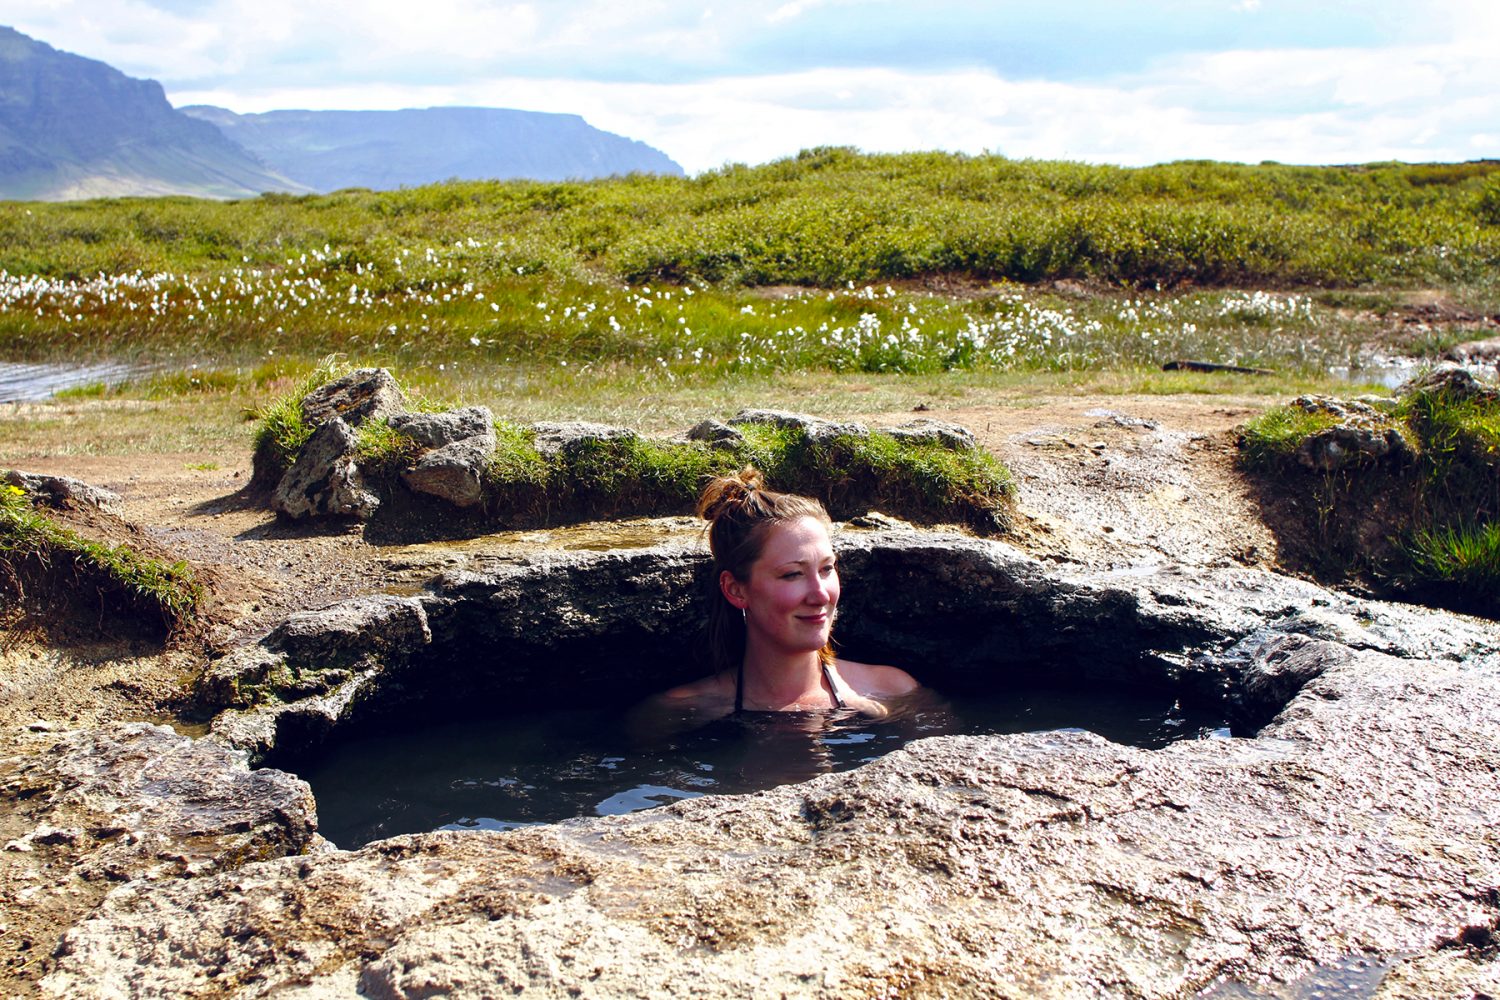 Travel-Talk Island: Interview & Insidertipps für Reykjavik von Melina Rathjen